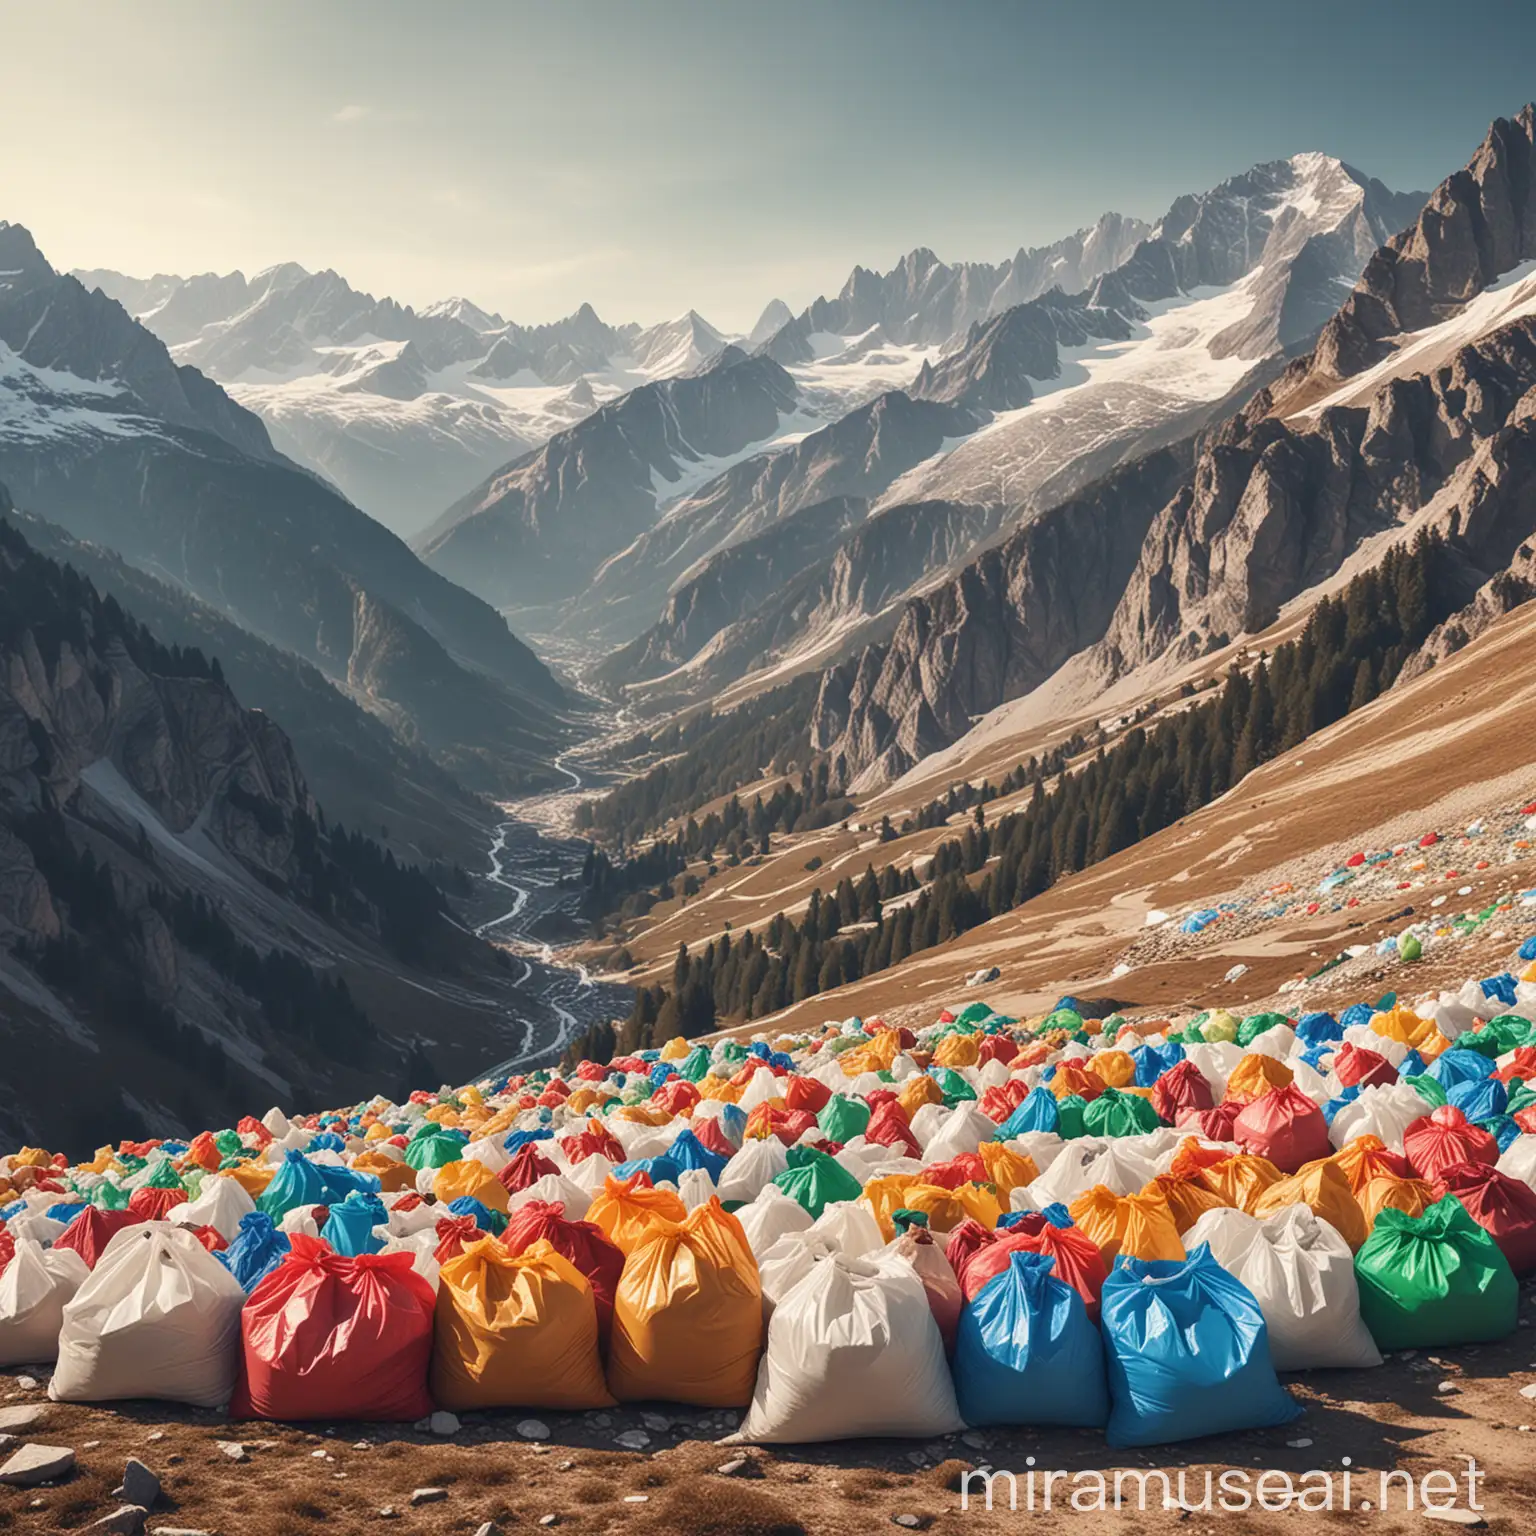 image réaliste des Alpes avec des sacs à commission en plastique colorés et vides qui sont répandus de manière dispersées sur les flancs de la montagne. Impression de pollution. 